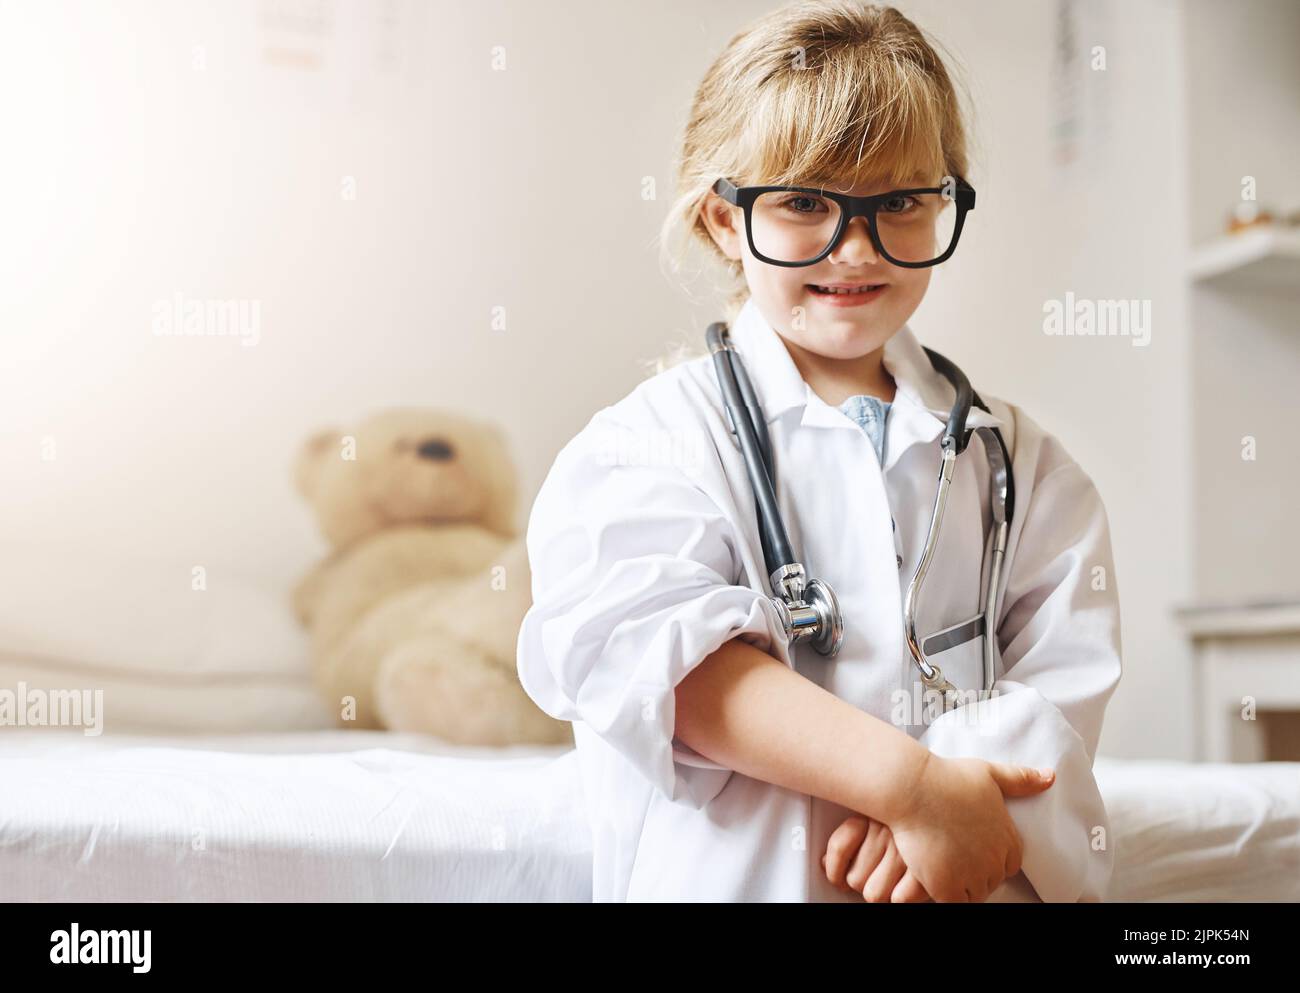 Un giorno Ill salva le vite appena come mommy fa. Ritratto di una adorabile bambina vestita da medico. Foto Stock